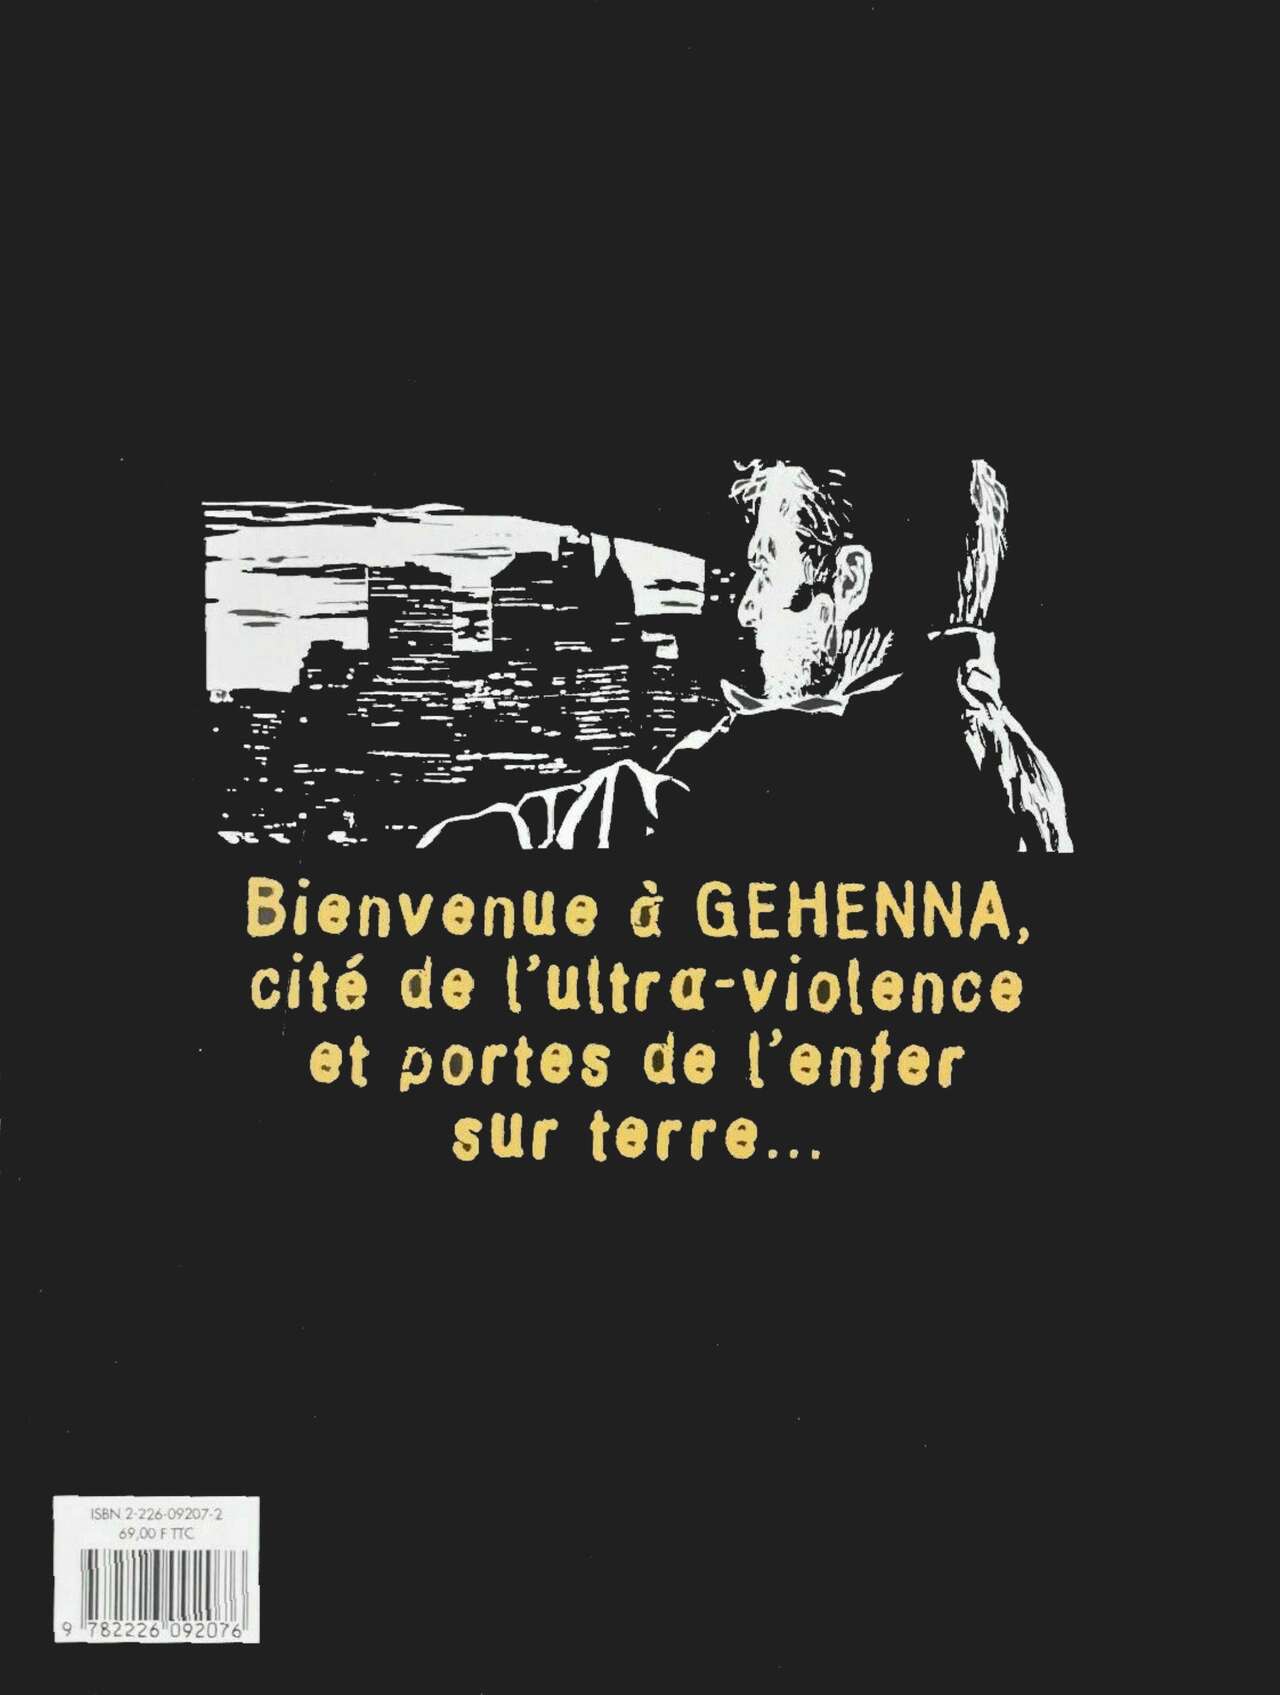 Gehenna - La cité de lultraviolence numero d'image 81